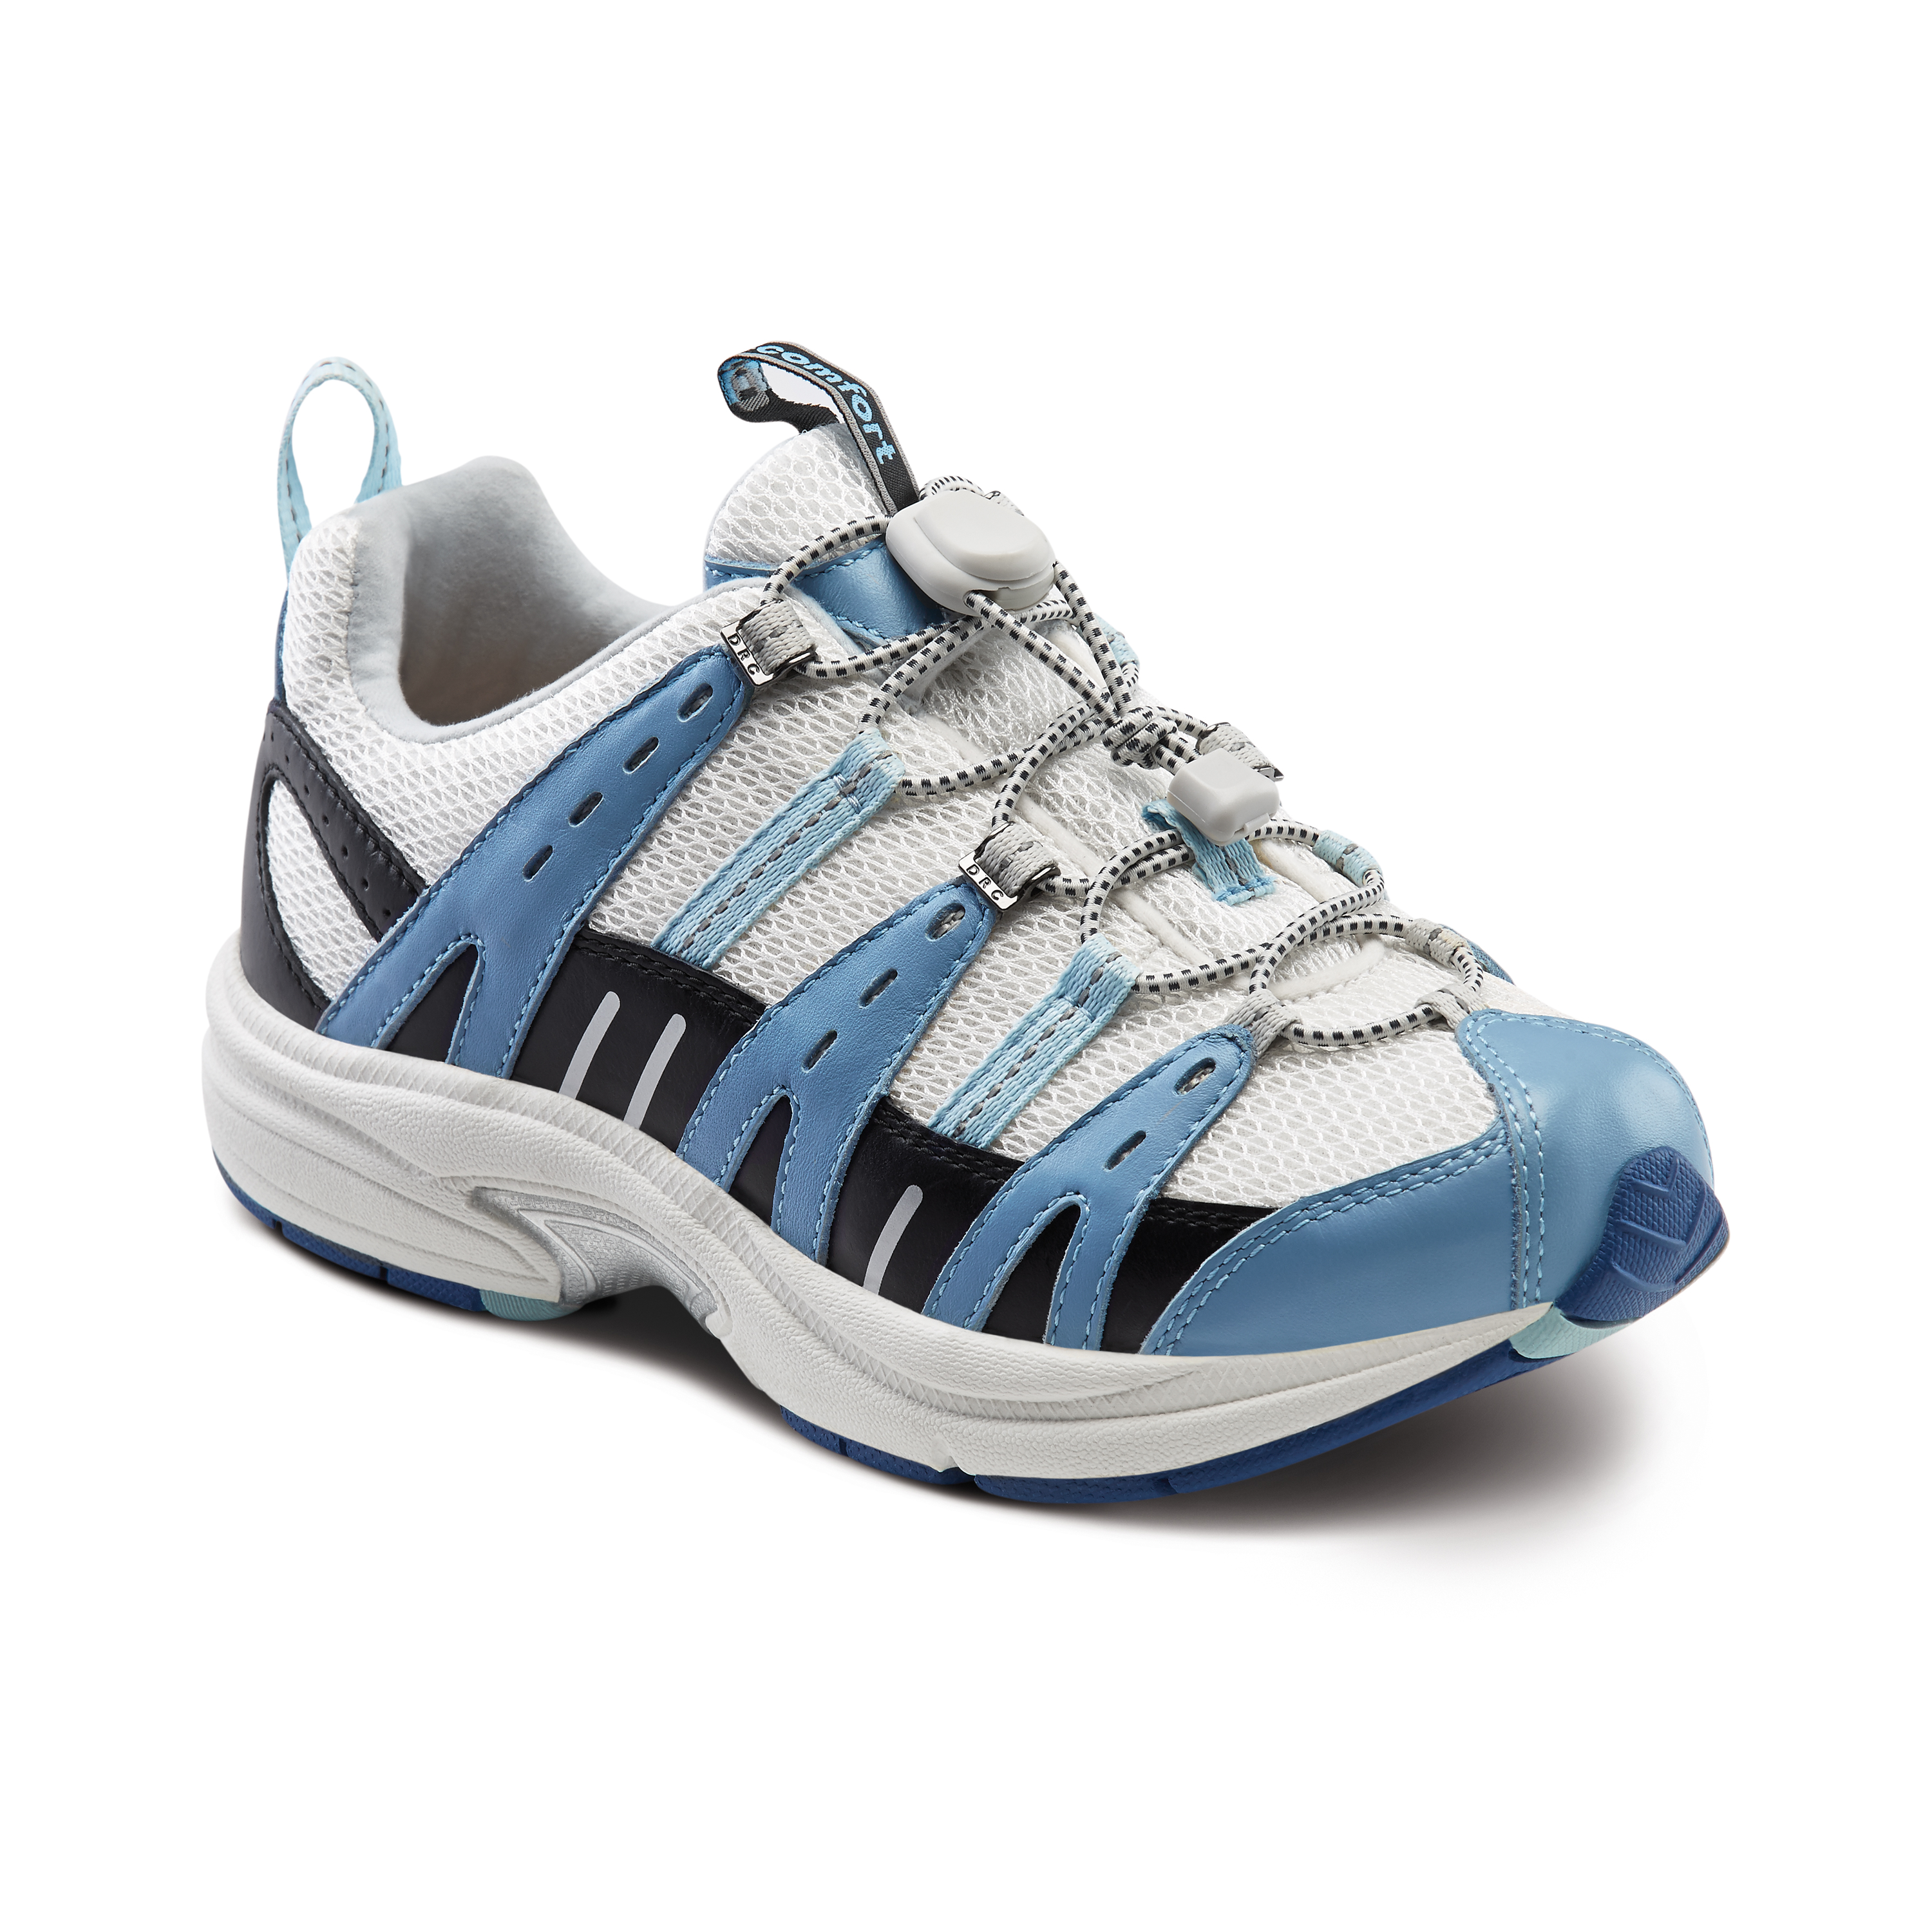 Produktbild DR. COMFORT® Refresh-X blau, Orthopädische Schuhe, Besonders weicher und leichter Freizeitschuh